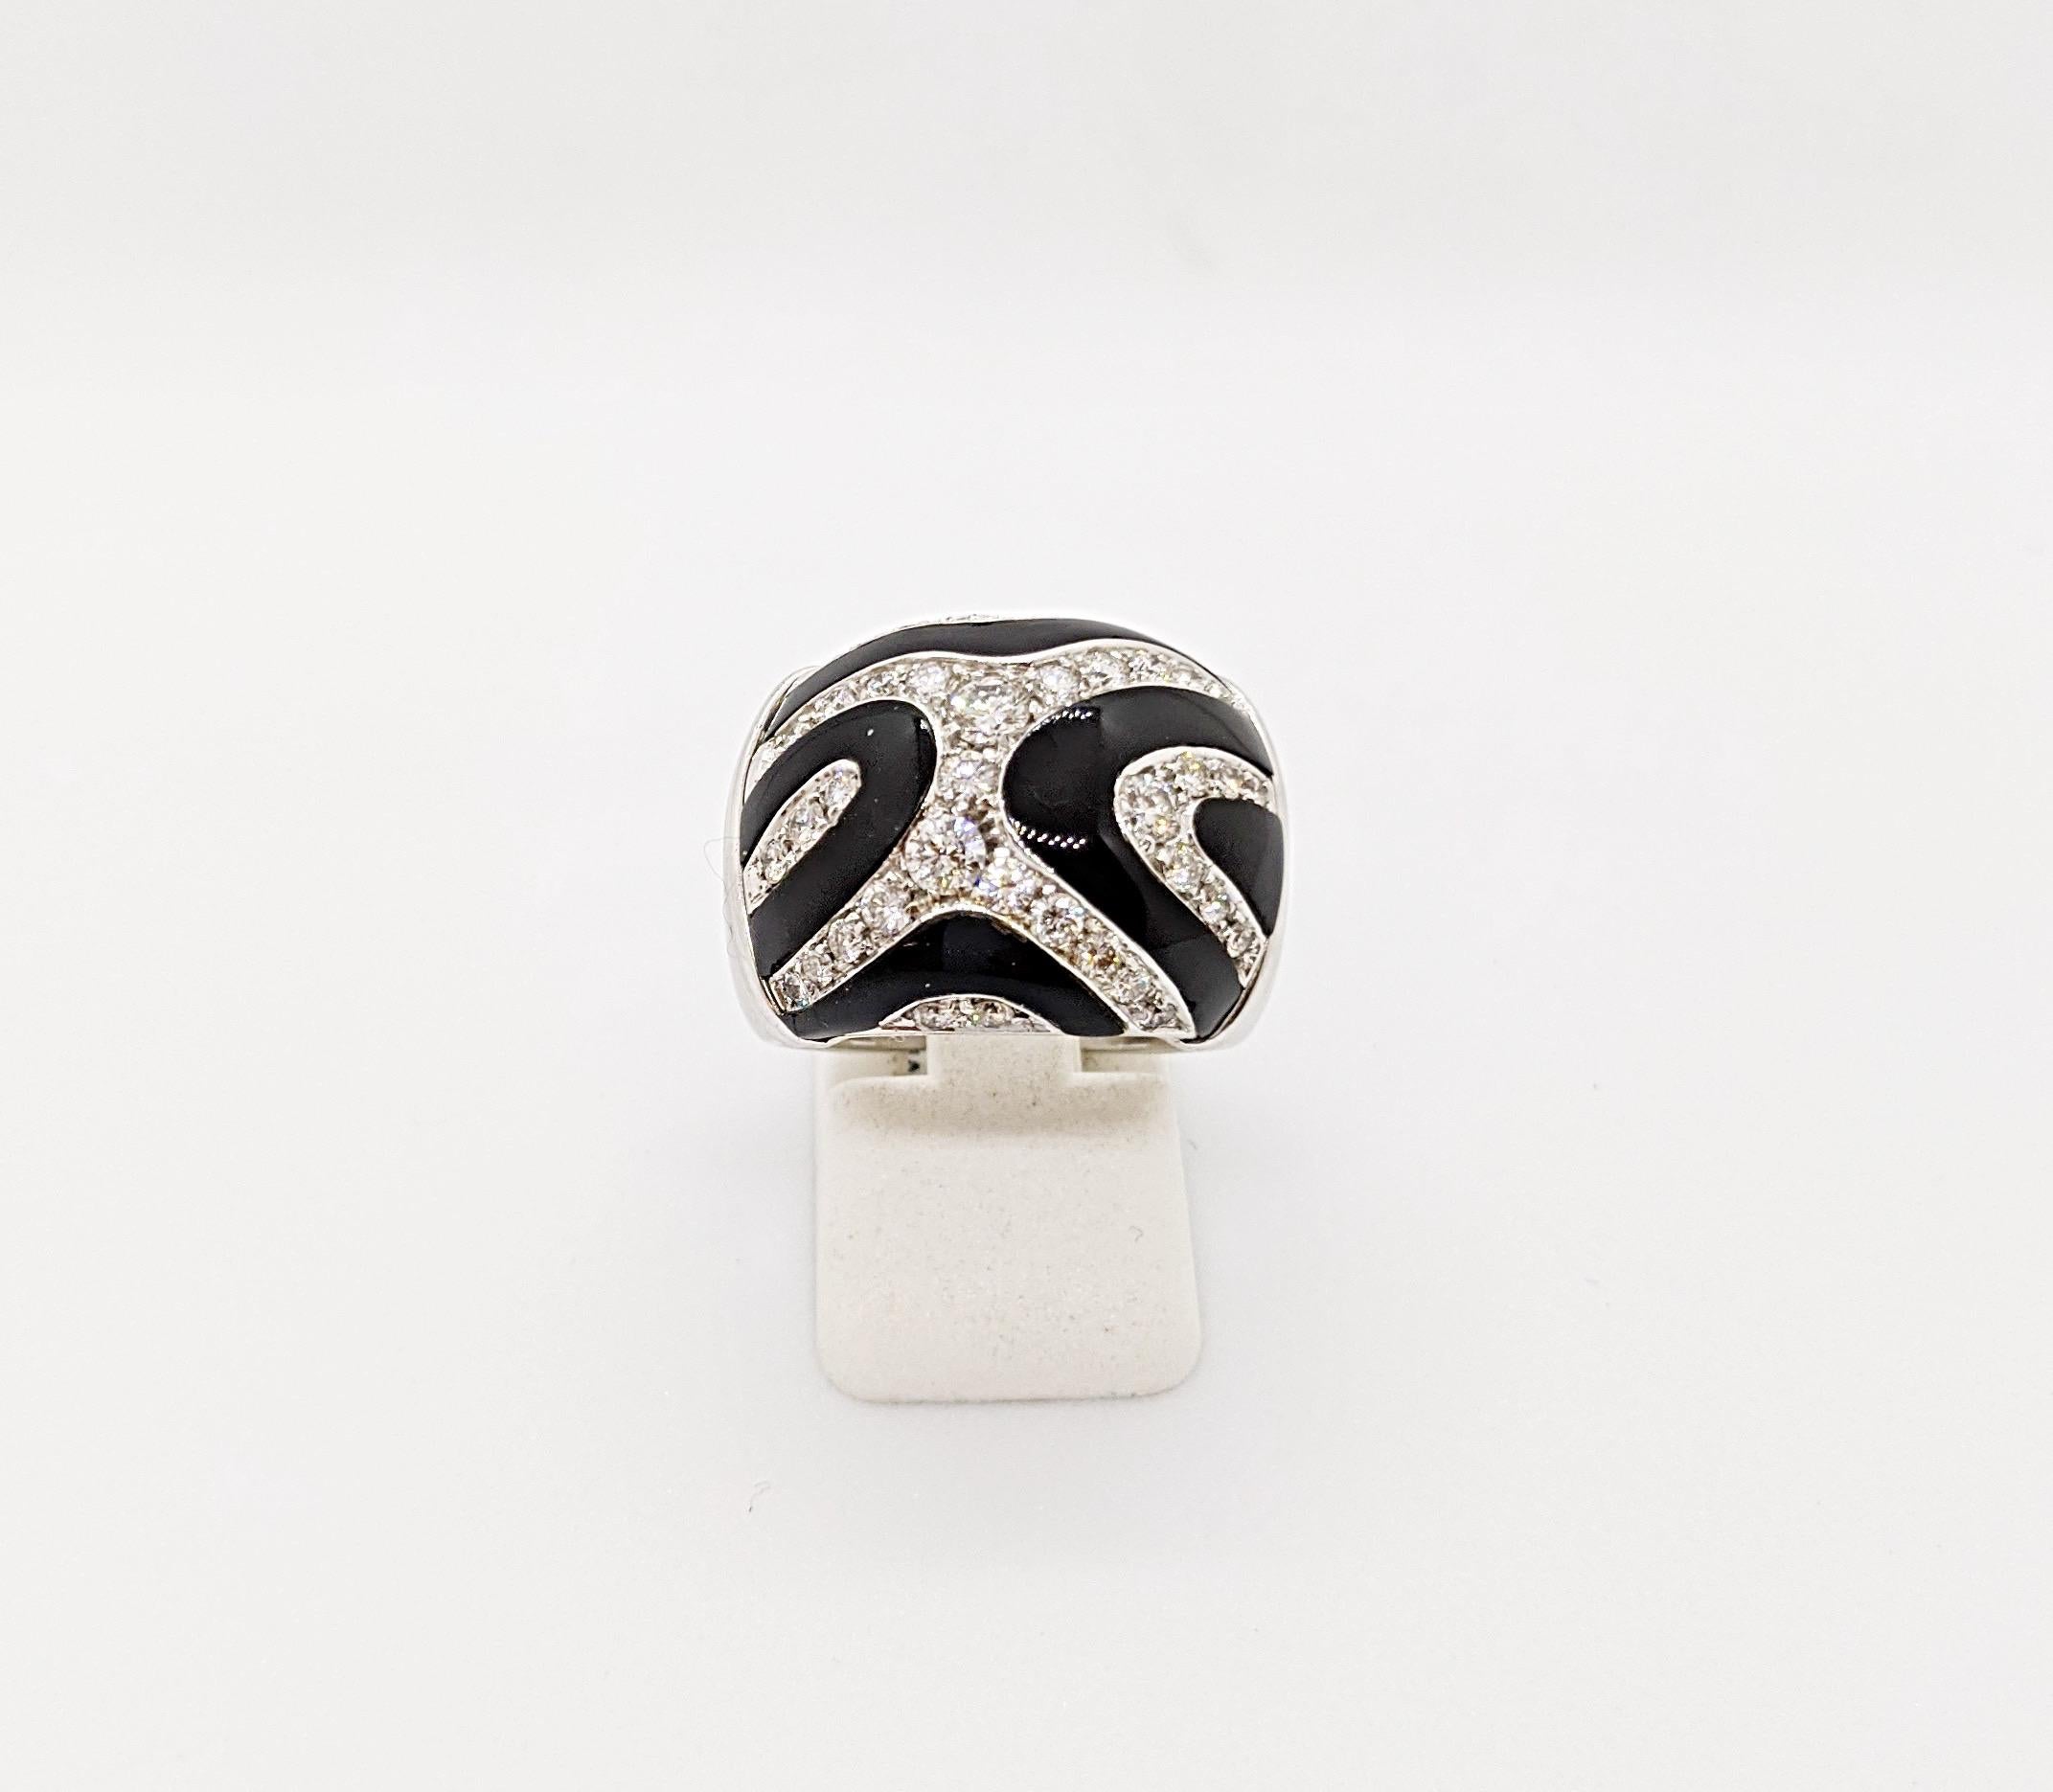 Entworfen von Giuseppe Picchiotti, dem Meister des Handwerks,  dieser glamouröse Ring ist das perfekte Beispiel für klassisch, cool und ausgefallen zugleich. Wirbel aus schwarzem Onyx und gepflasterte Diamanten bilden das Tigermuster.  Die Diamant-